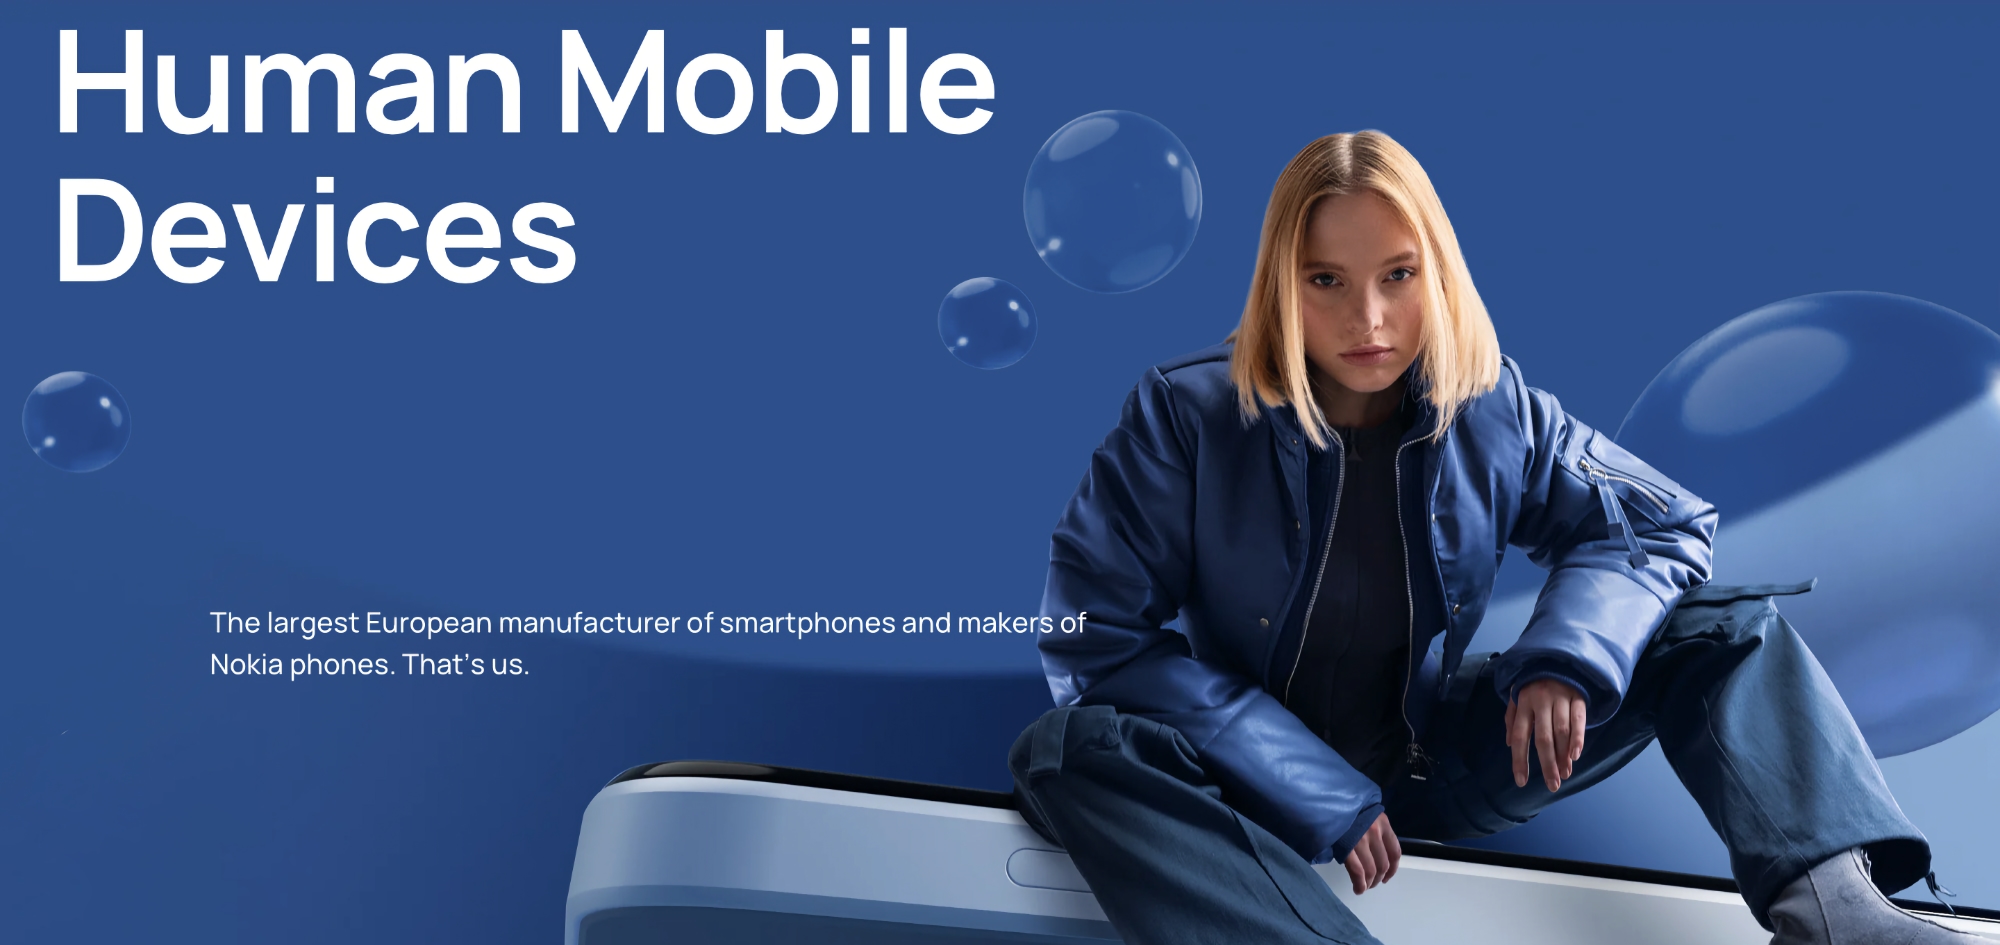 Strategi för flera varumärken: HMD Global kommer att lansera Nokia-smartphones tillsammans med märkesvaror